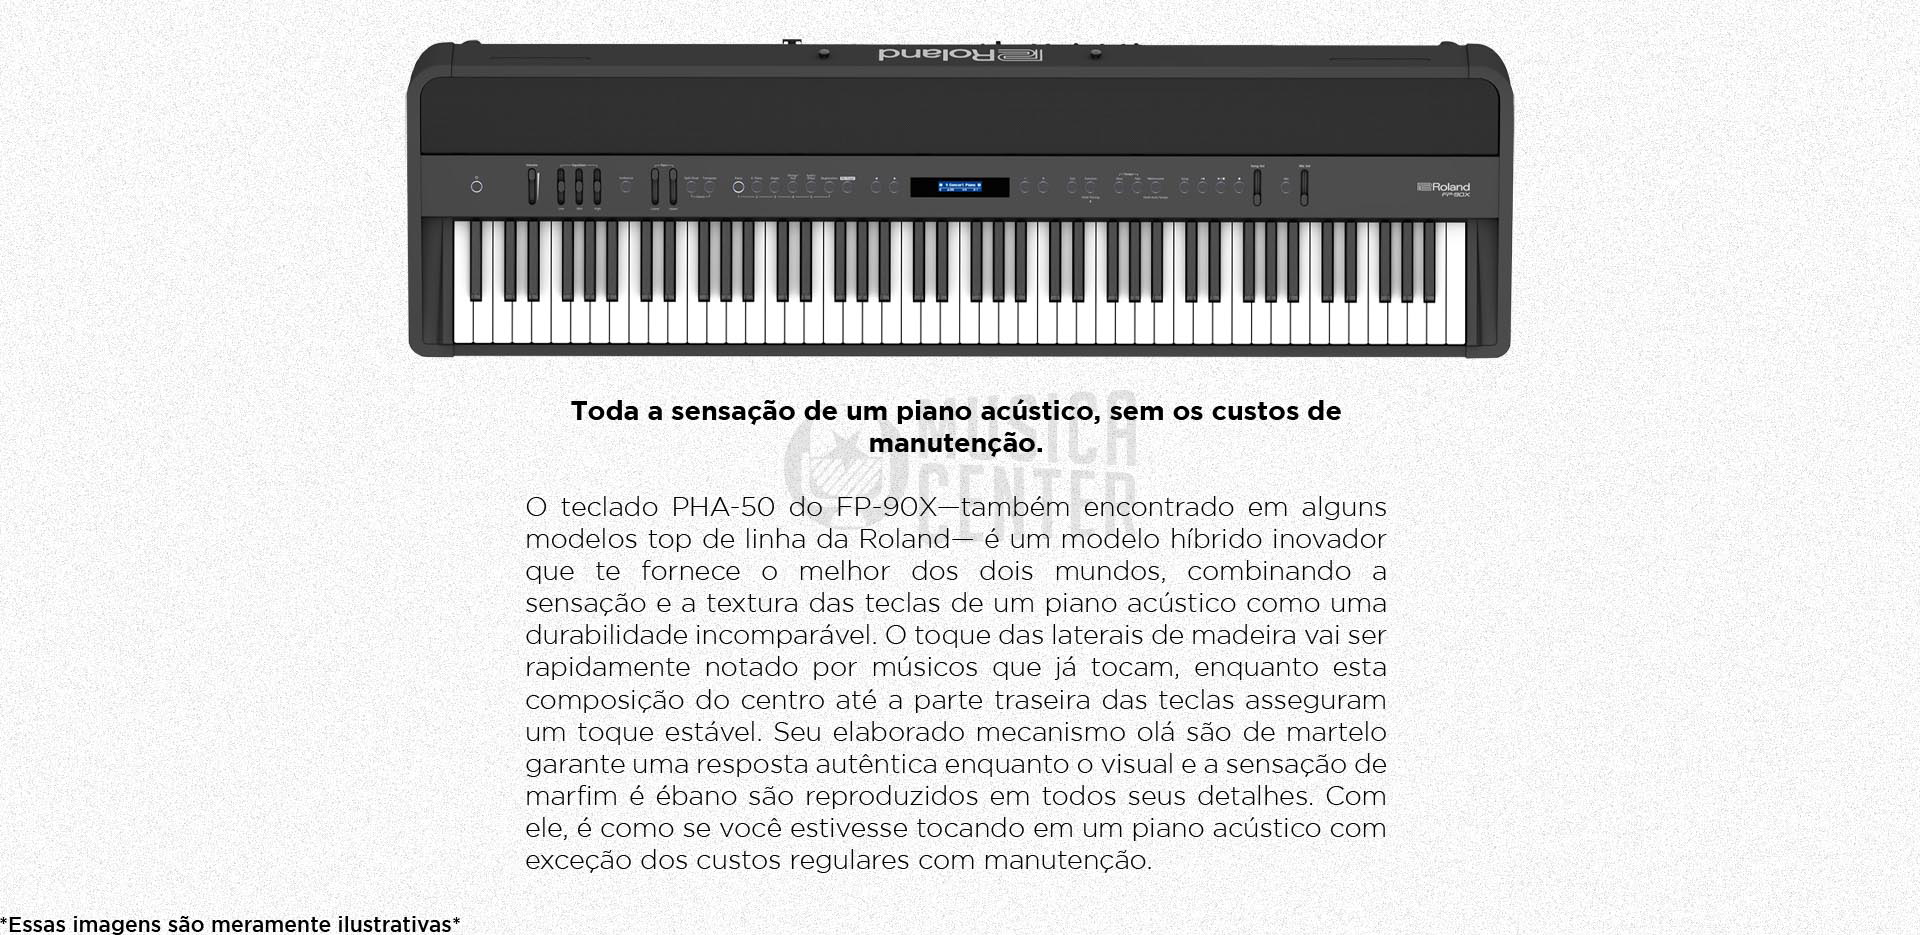 Piano Digital Roland FP-90X possui o teclado dinâmico PHA-4